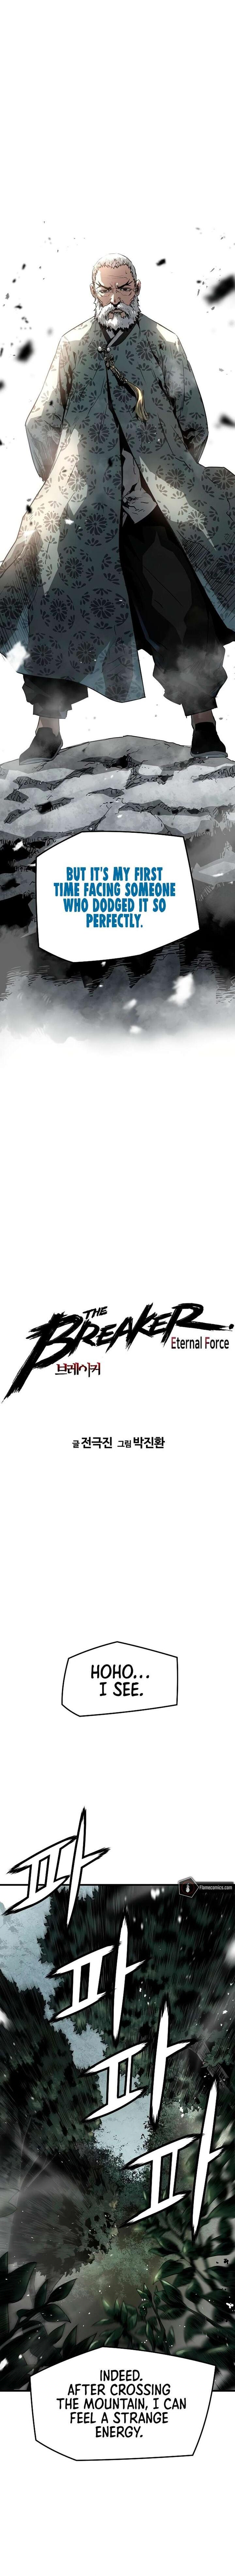 The Breaker 3 Eternal Force 87 1